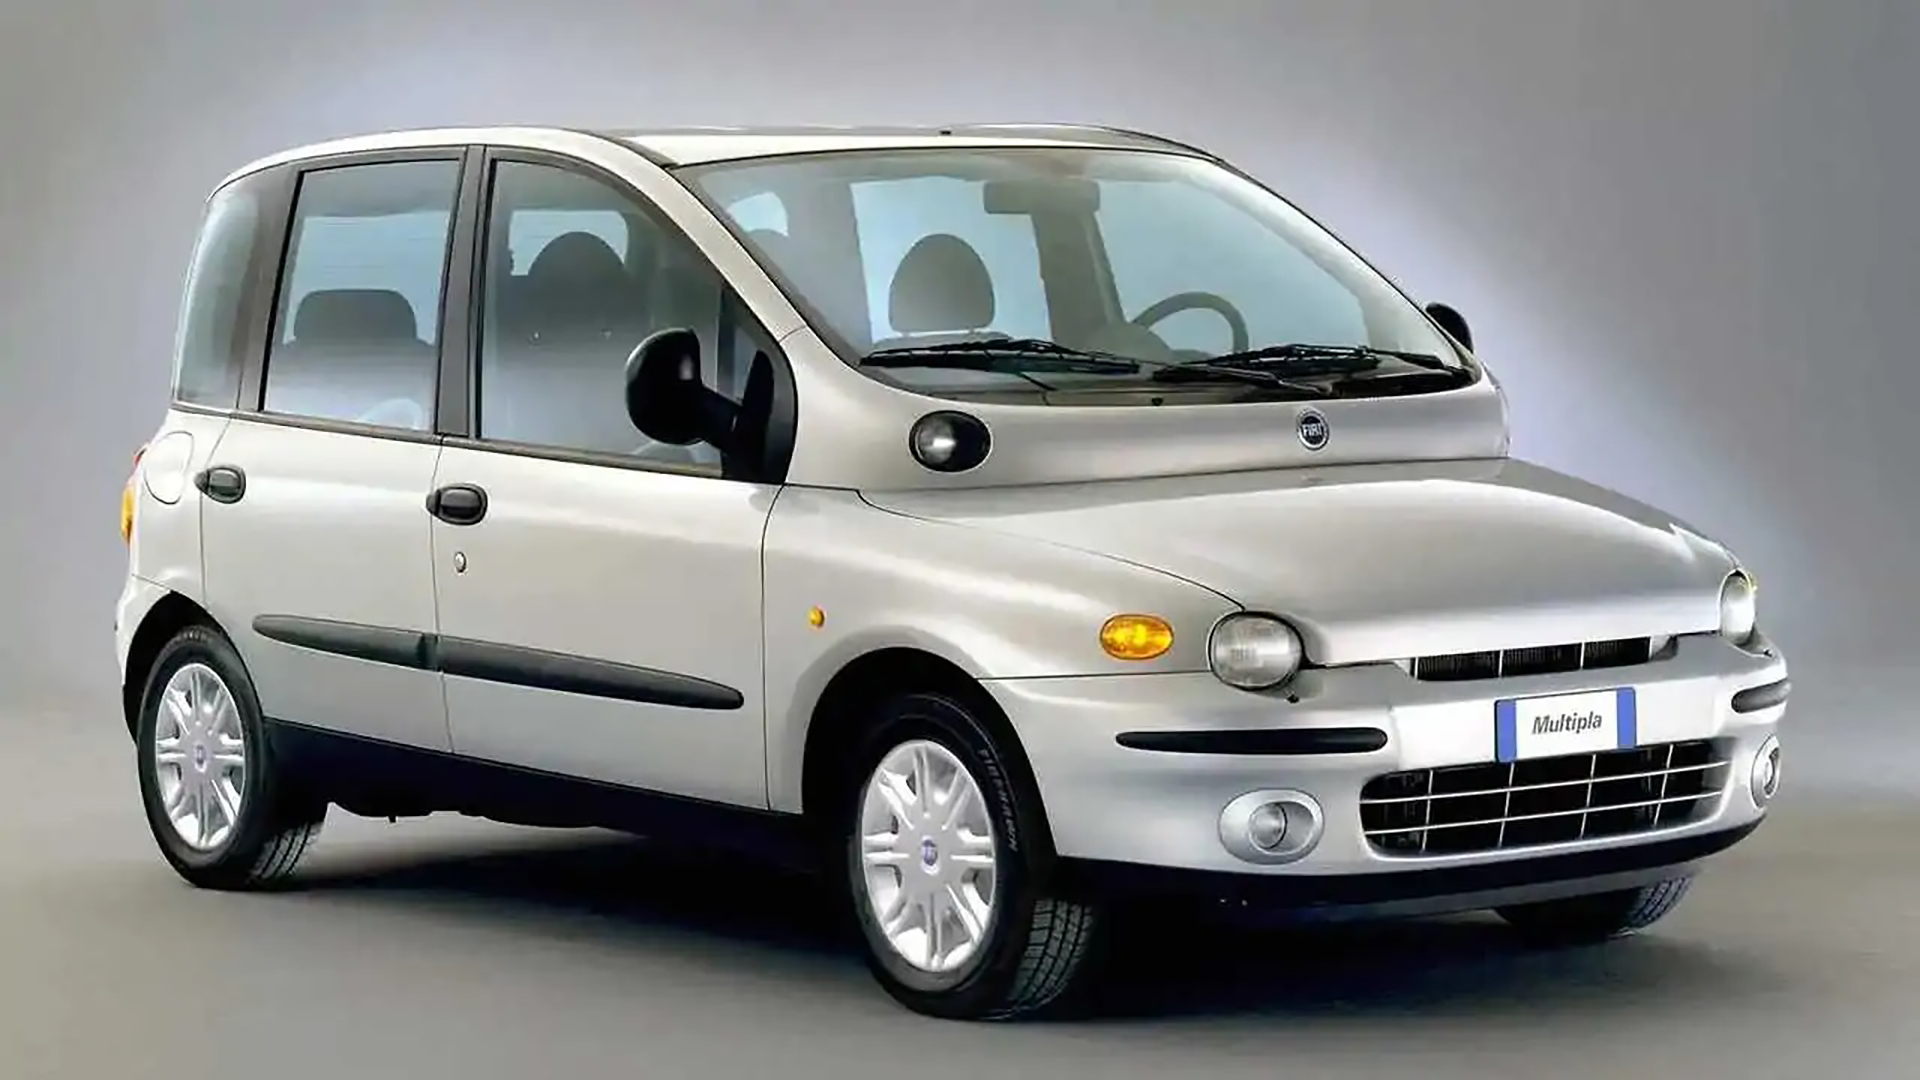 El Fiat Múltipla fue considerado el auto más feo, al menos eso dice la estadística que utilizó Hippo Leasing para hacer el Deformis 10